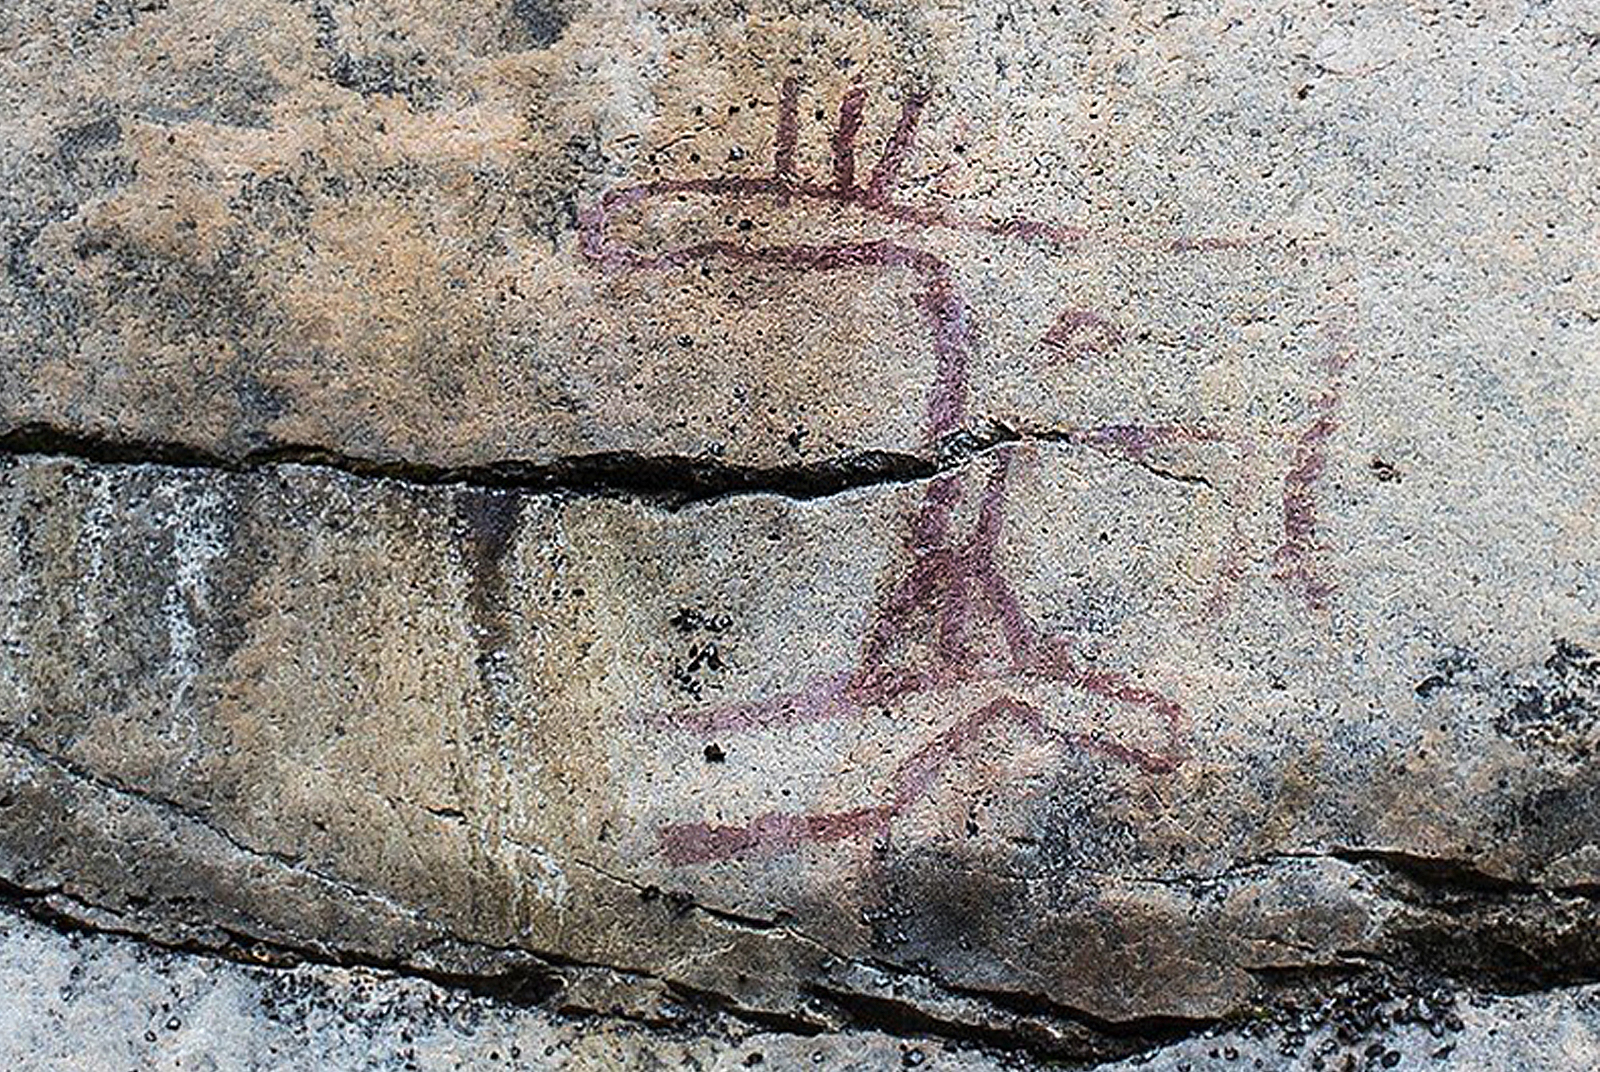 Kolmiköytisienvuori Ruokolahti Finland Rock Art Petroglyphs Pictographs Scandinavia